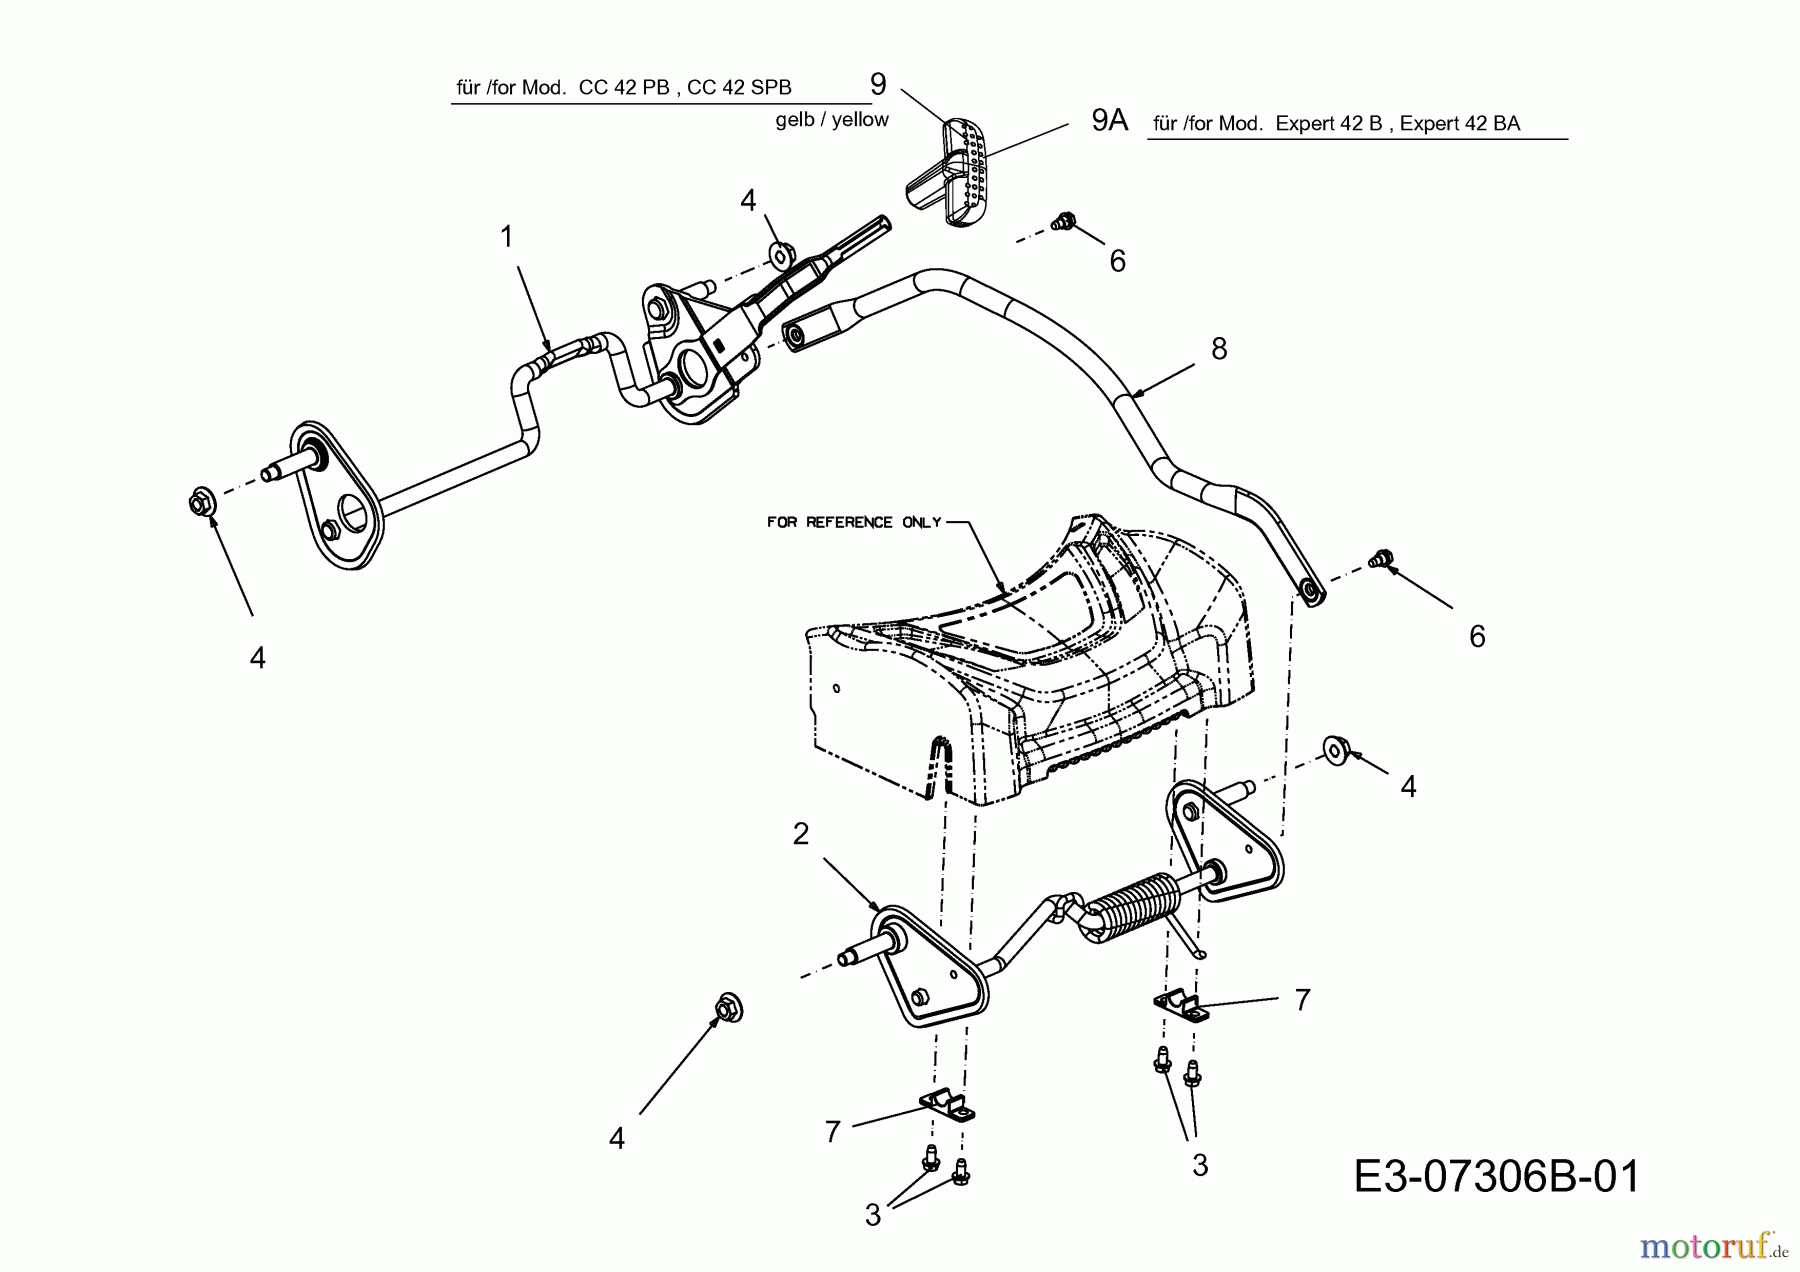  Wolf-Garten Petrol mower Expert 42 B 11A-H65E650  (2013) Hight adjustment